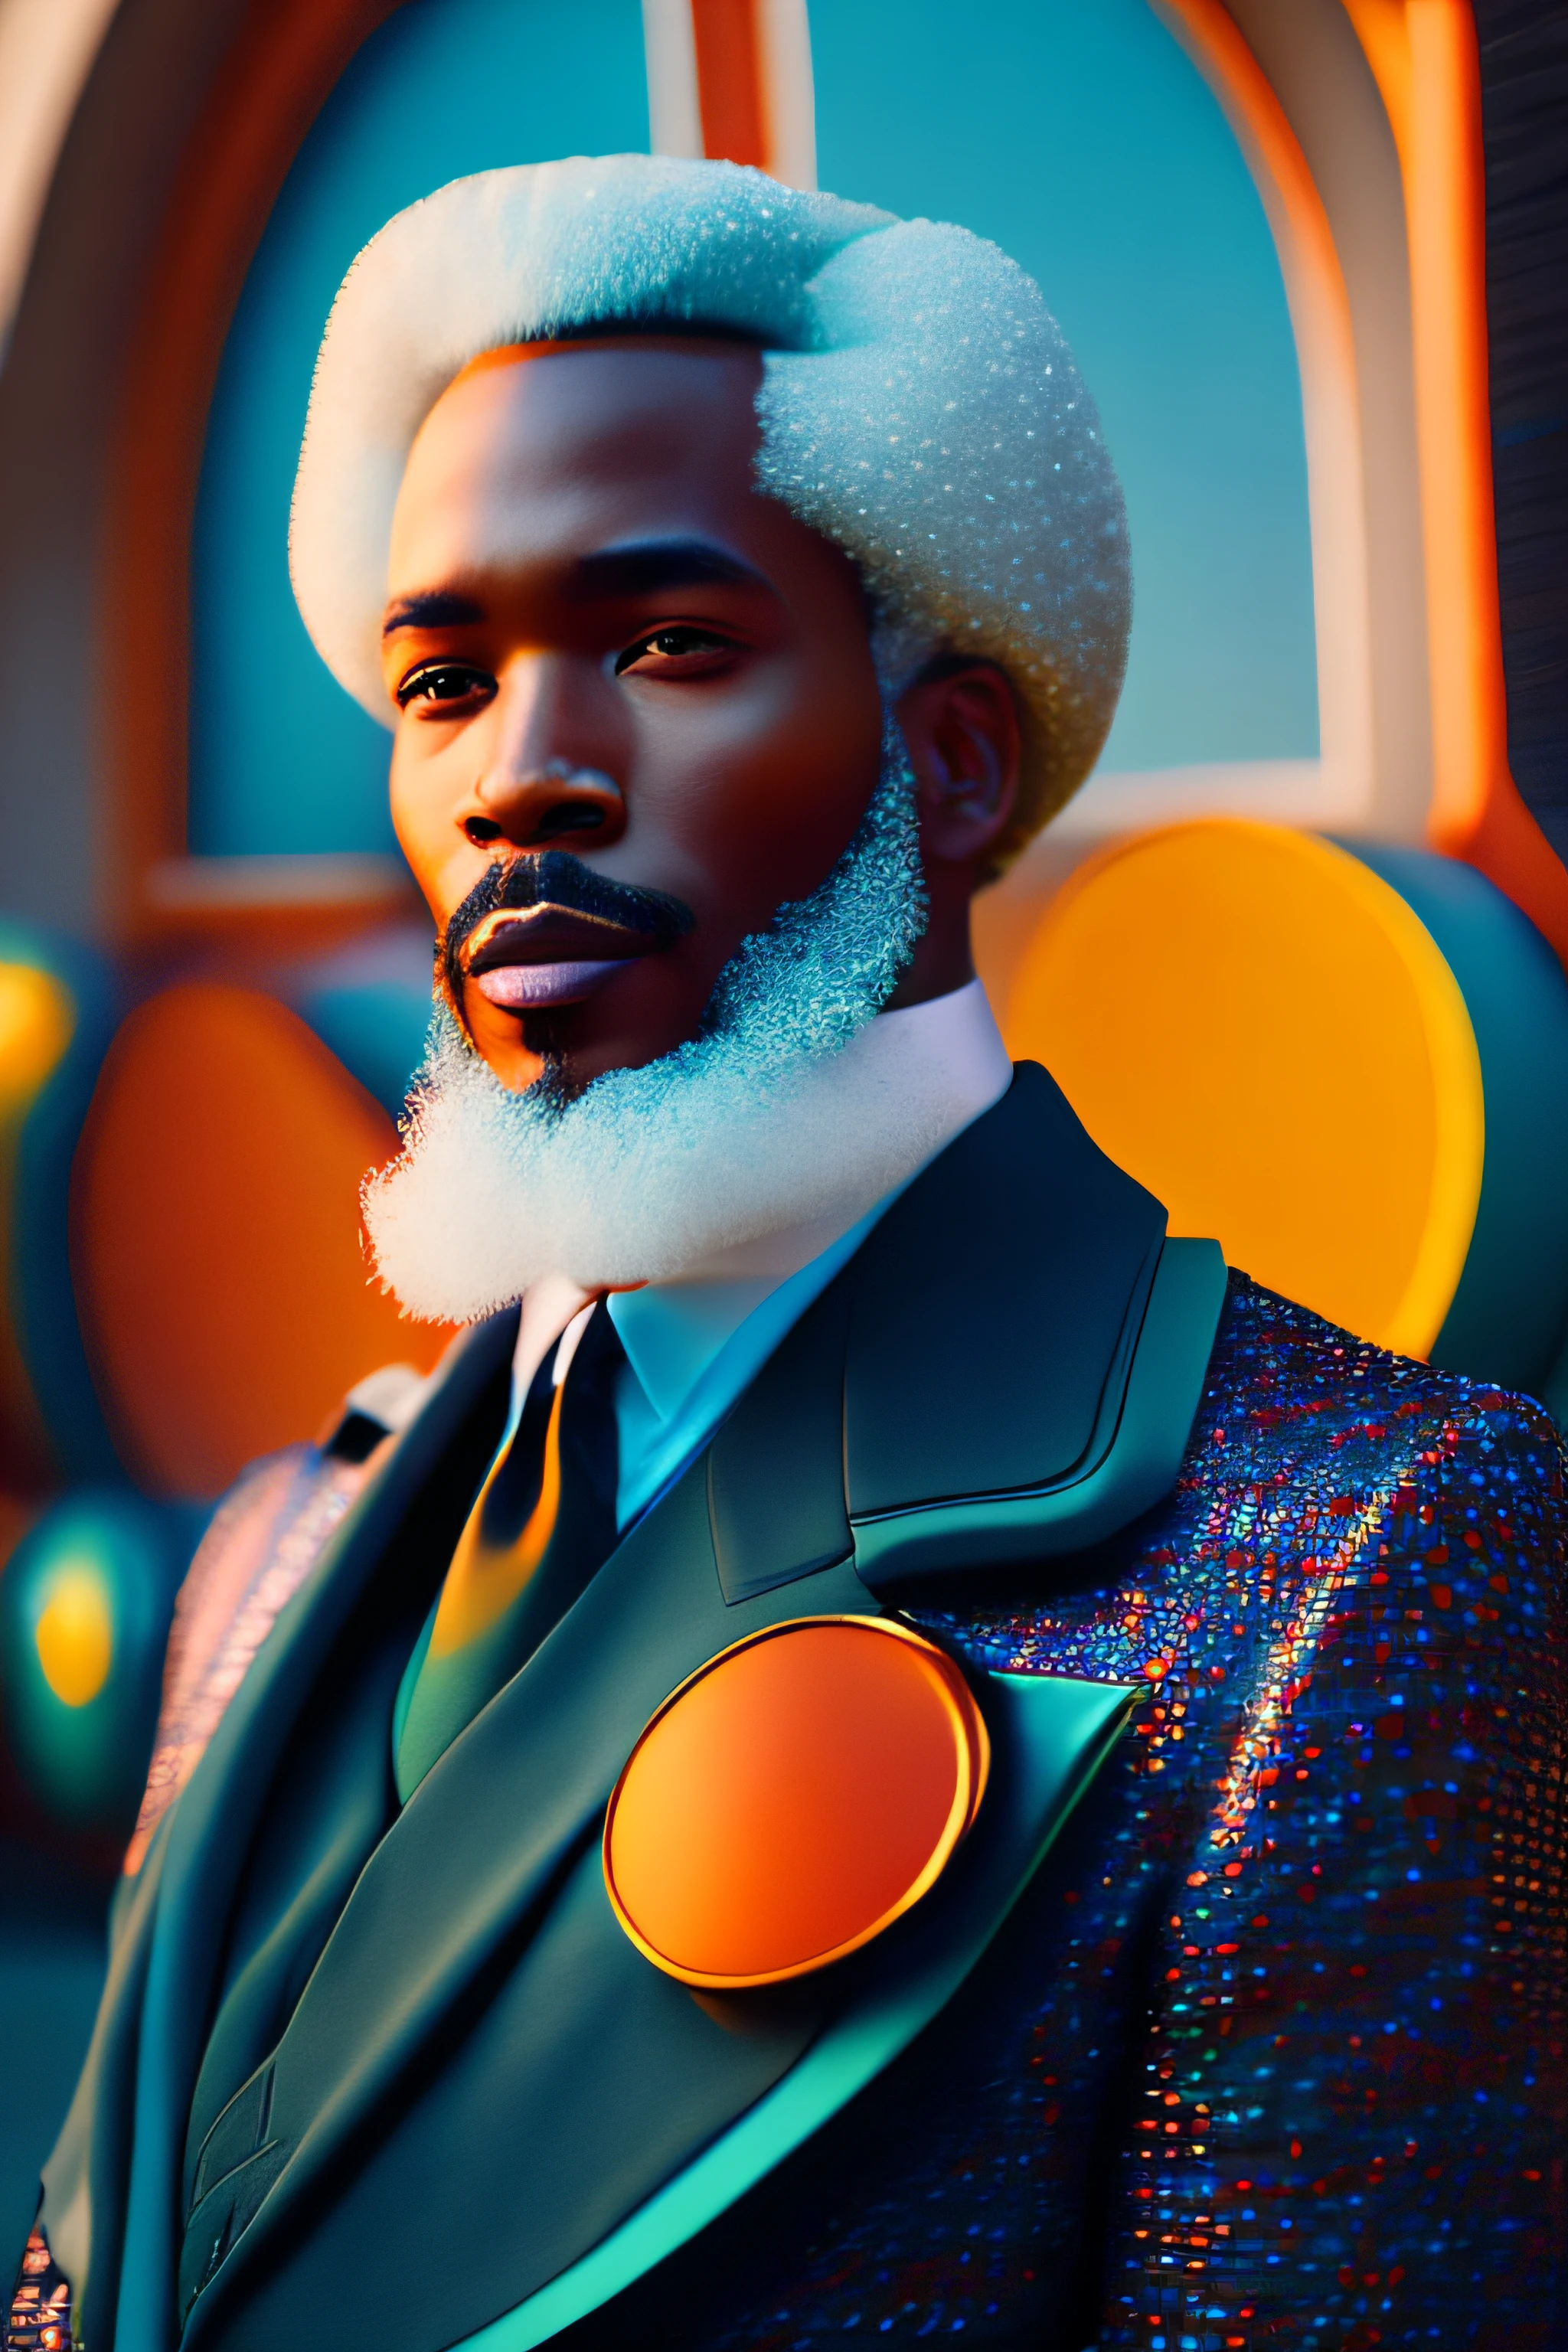 (Портрет африканского модника, пожилой, большая белая борода, Очень элегантно, 1950-е годы с замысловатым цветным и цветным стеклом), разноцветные пушистые волосы, выражение серьезное (чрезвычайно детальная цифровая фотография: 1.2), стою посреди города, (((все тело))), необработанное изображение,, Хассельблад, 50 часов, f8, 12 миллиметров, эффекты свечения, Лучи Бога, нарисованный от руки, одолжить, 8К, Октановый рендер, кино 4д, блендер, Темный, атмосферное 4k ультра детализированное, кинематографический чувственный, острый фокус, юмористическая иллюстрация, большая глубина резкости, первая работа, ядра, 3D октановый рендер, 4k, концептуальное искусство, тренд на artstation, Гиперреалистичный, ядра vivas, Светящееся кольцо, extremamente detalhado CG unidade de papel de parede 8К, тренды в artstation, тенденция в компьютерном обществе, Стиль поп-арт Эрика Мэдигана Хека, сложный, Высокая детализация, Драматический , чистая энергия, легкие частицы, научная фантастика